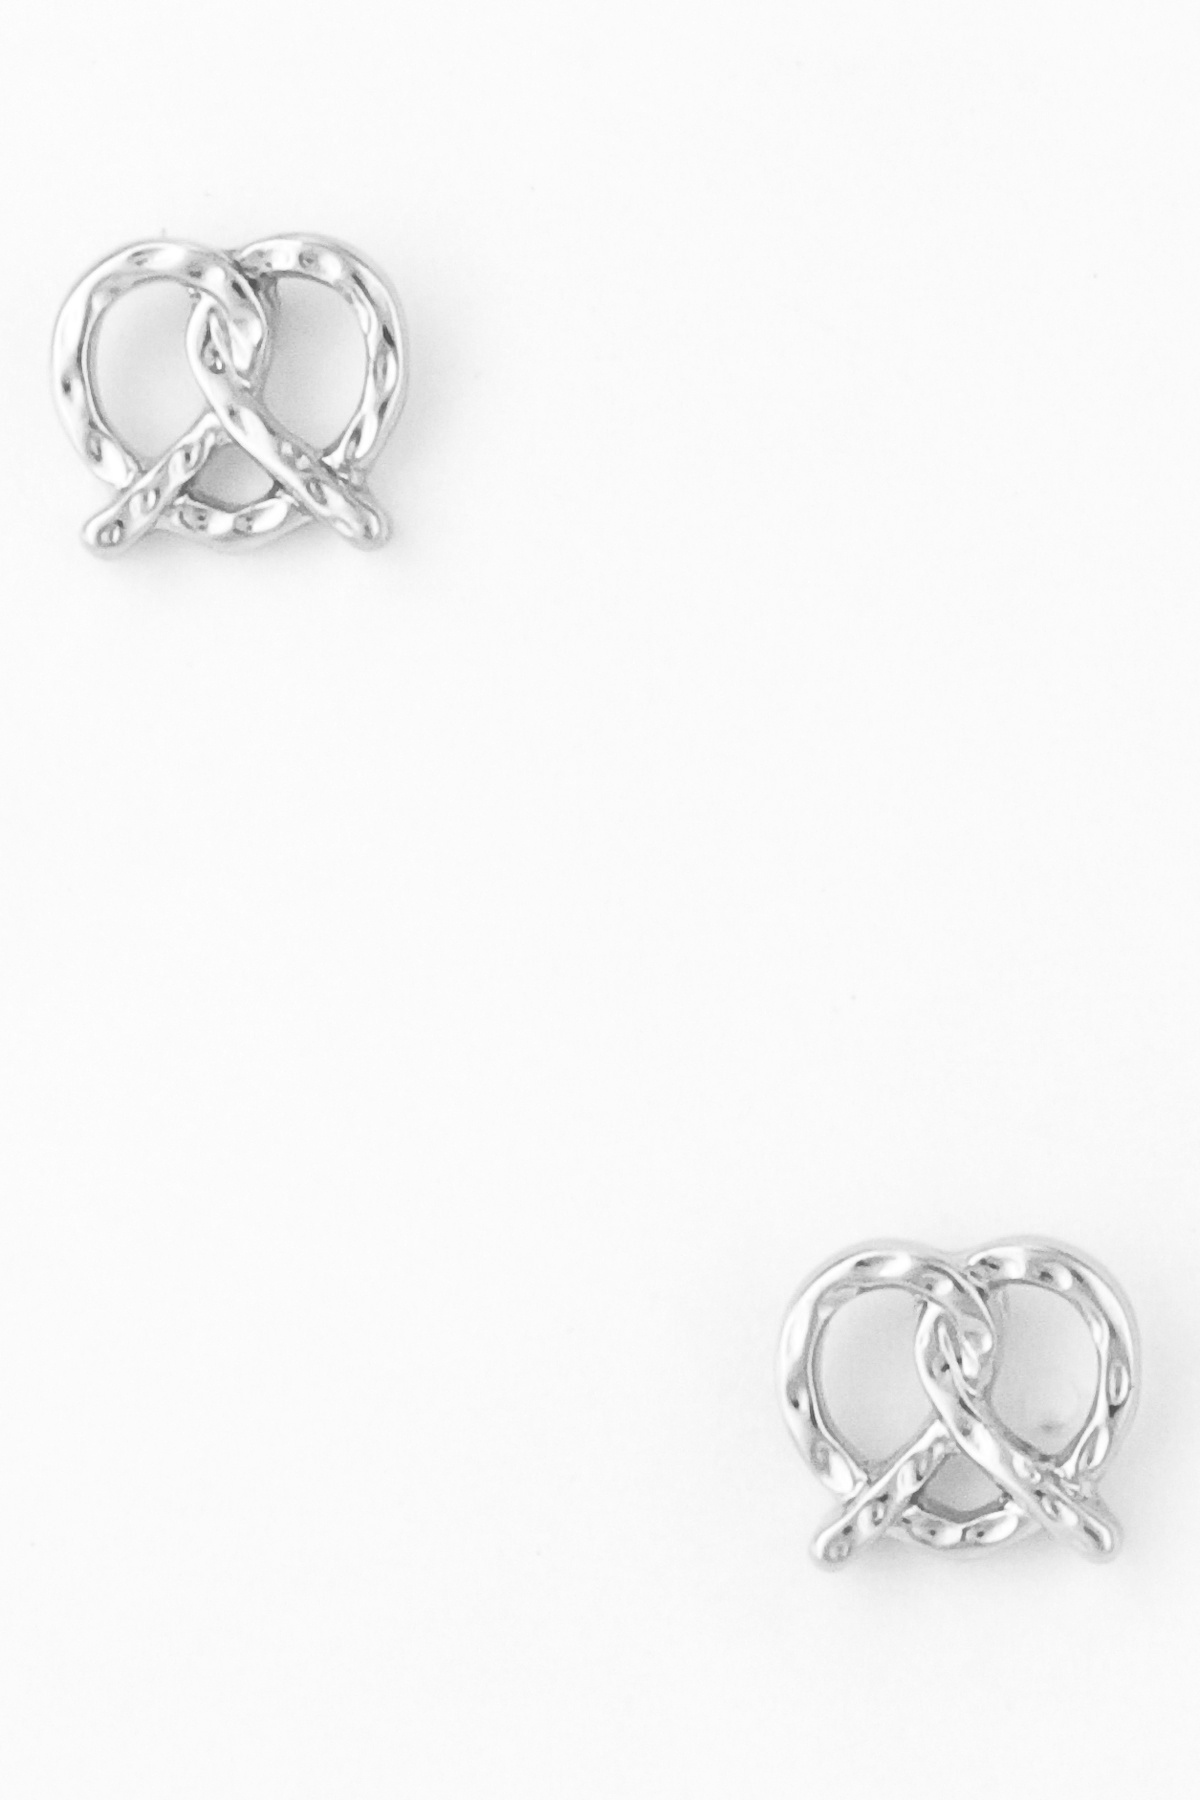 Metal Pretzel Earring Stud - Earrings